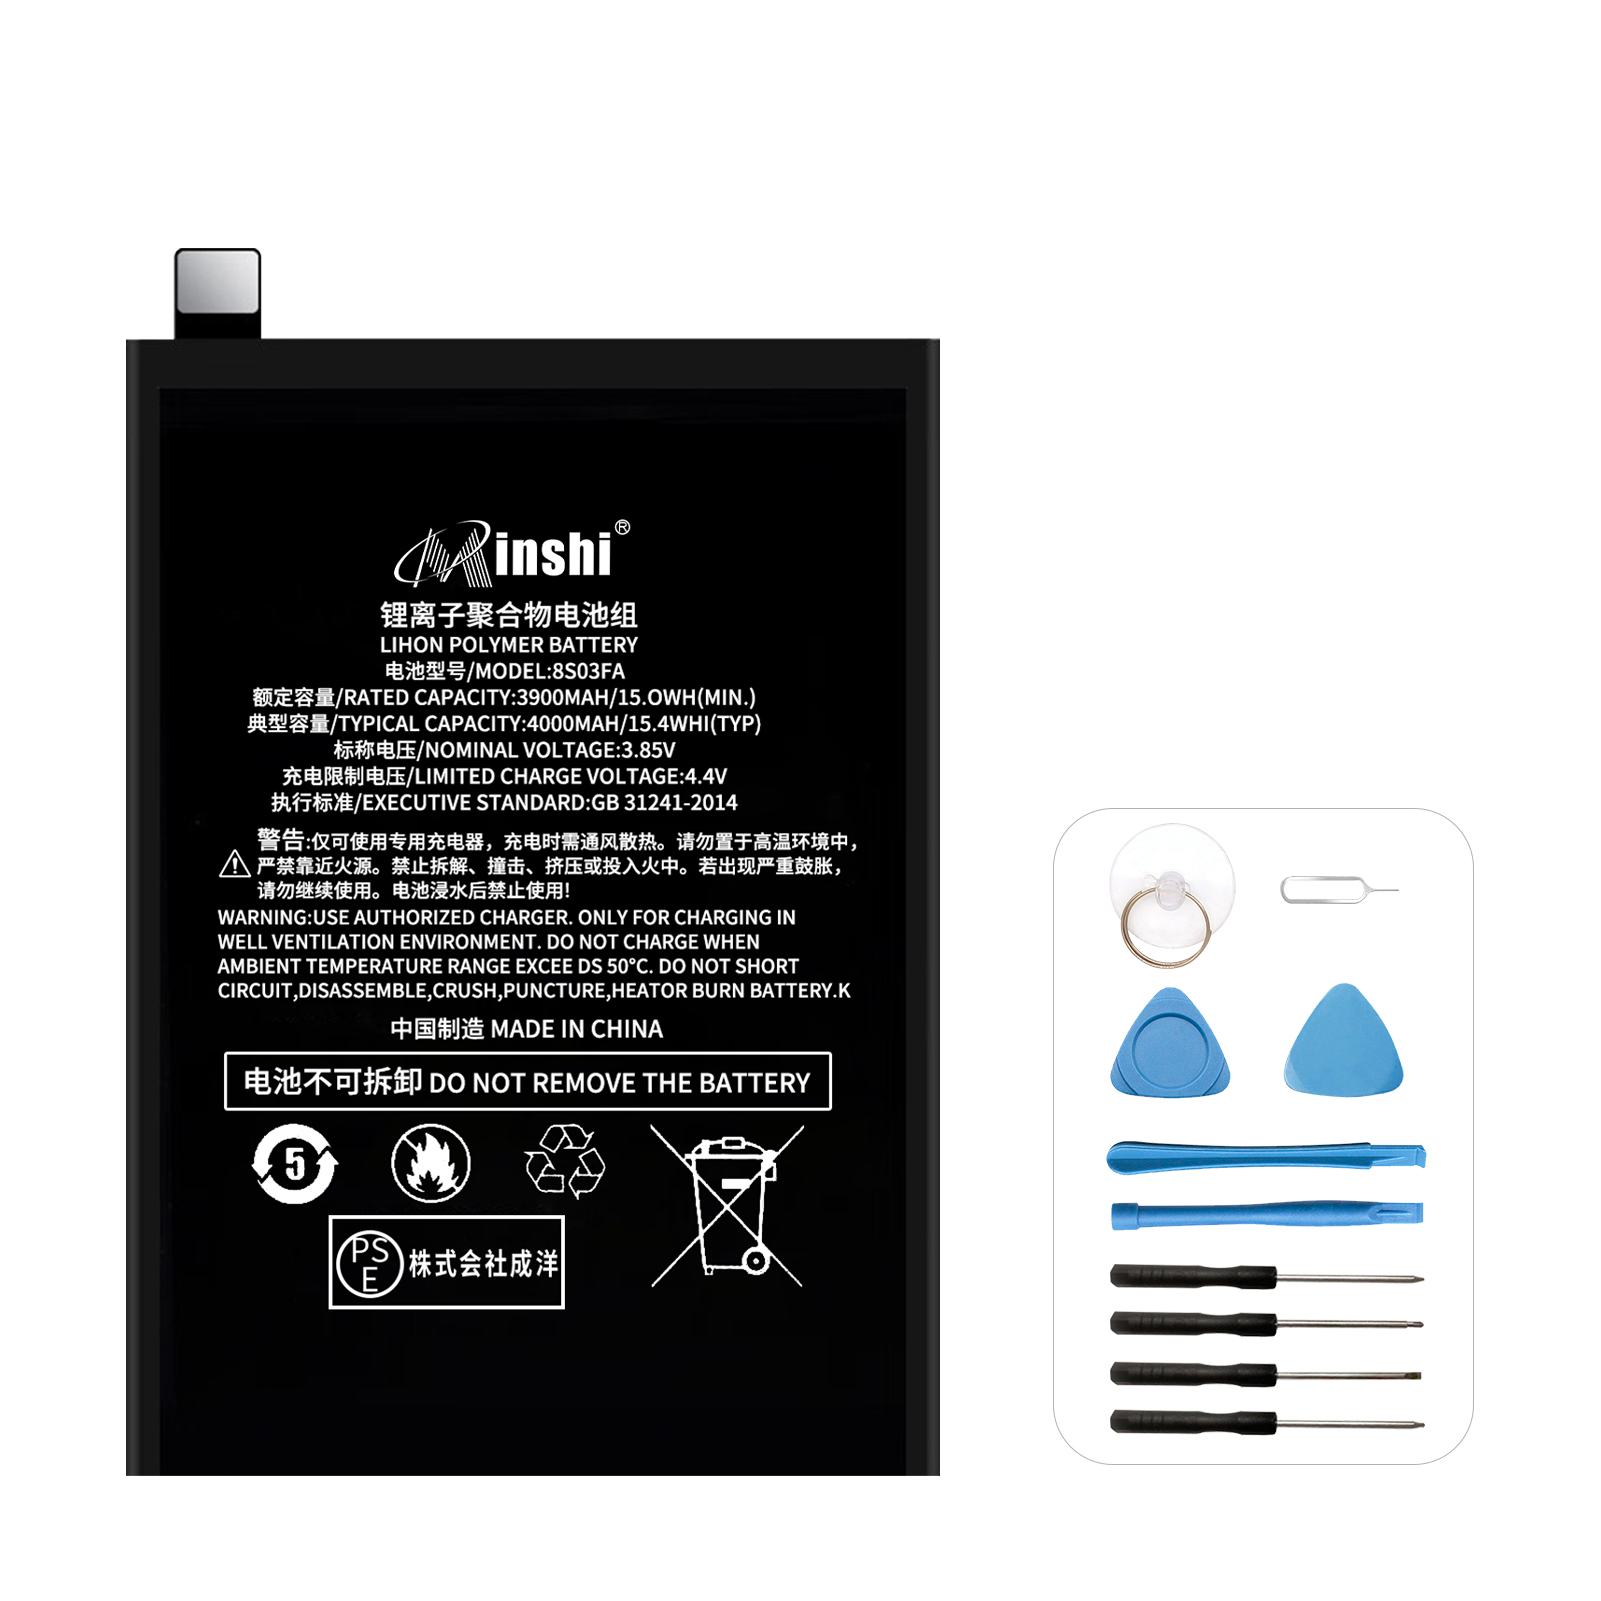 XIAOMI Black Shark2 Pro バッテリー 交換 バッテリー 工具 セット 3900mAh 3.85V 互換バッテリー 電池パック 1年保証 PSE認証済